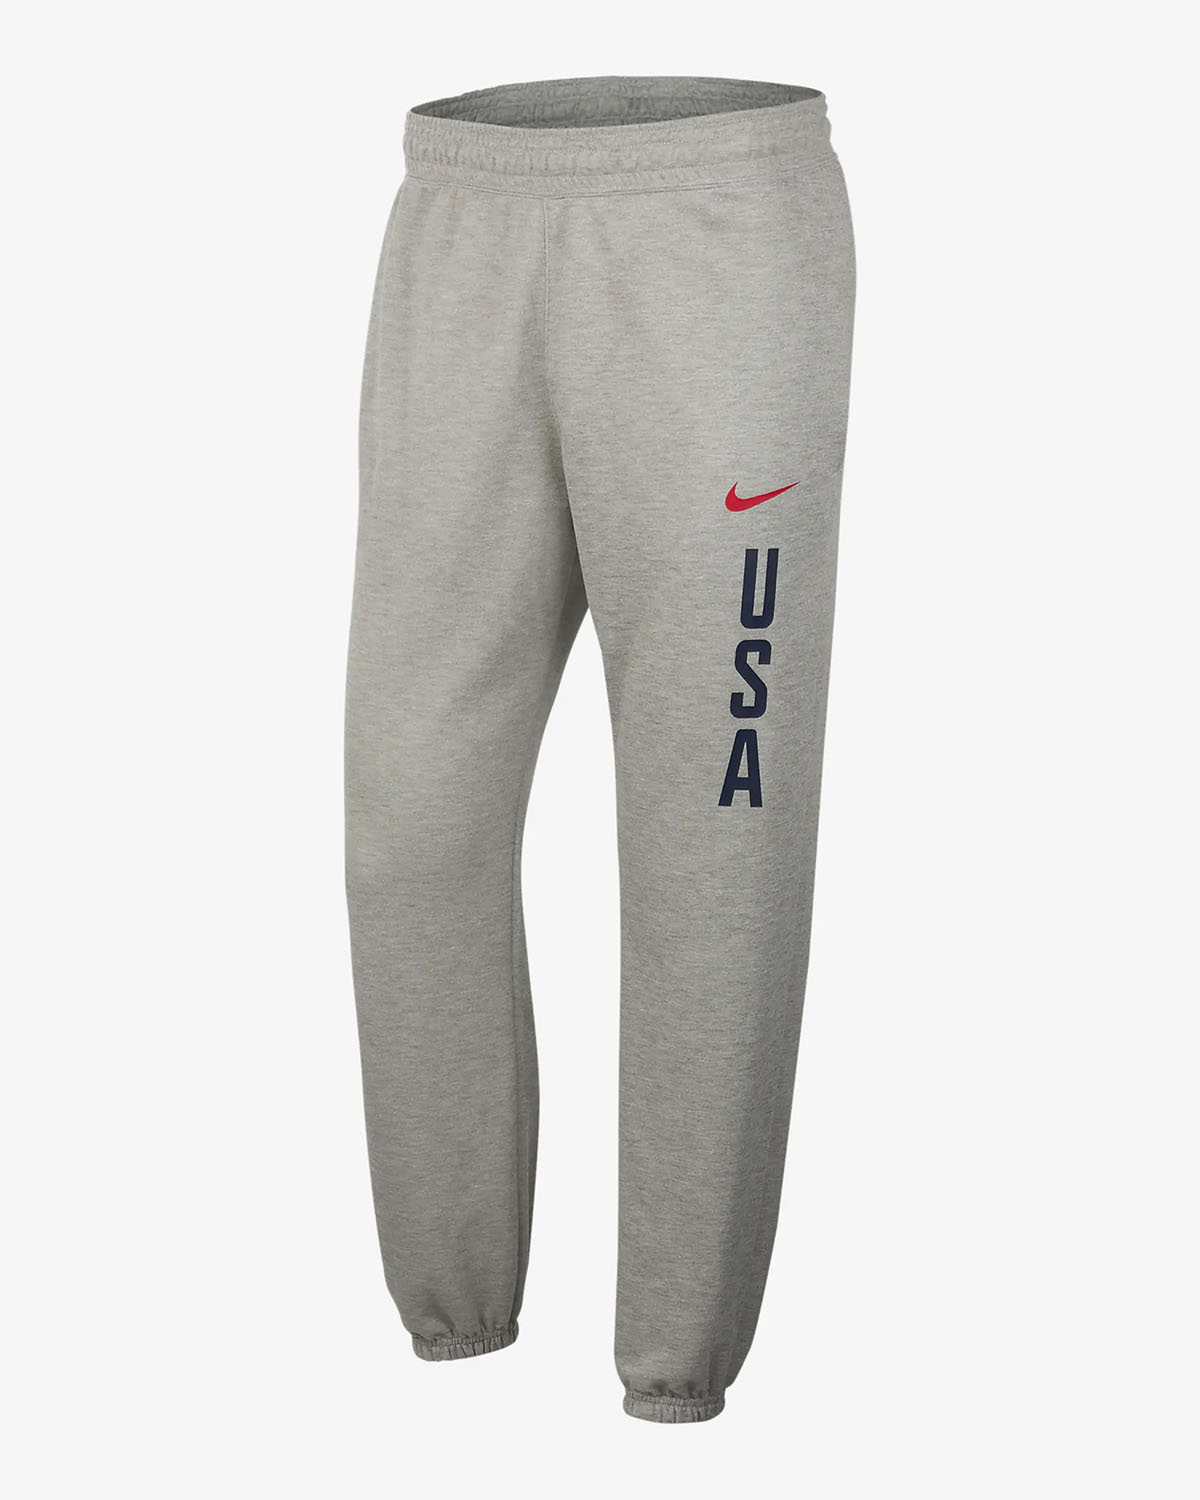 Nike USA Basketball Practice Fleece Pants Grey